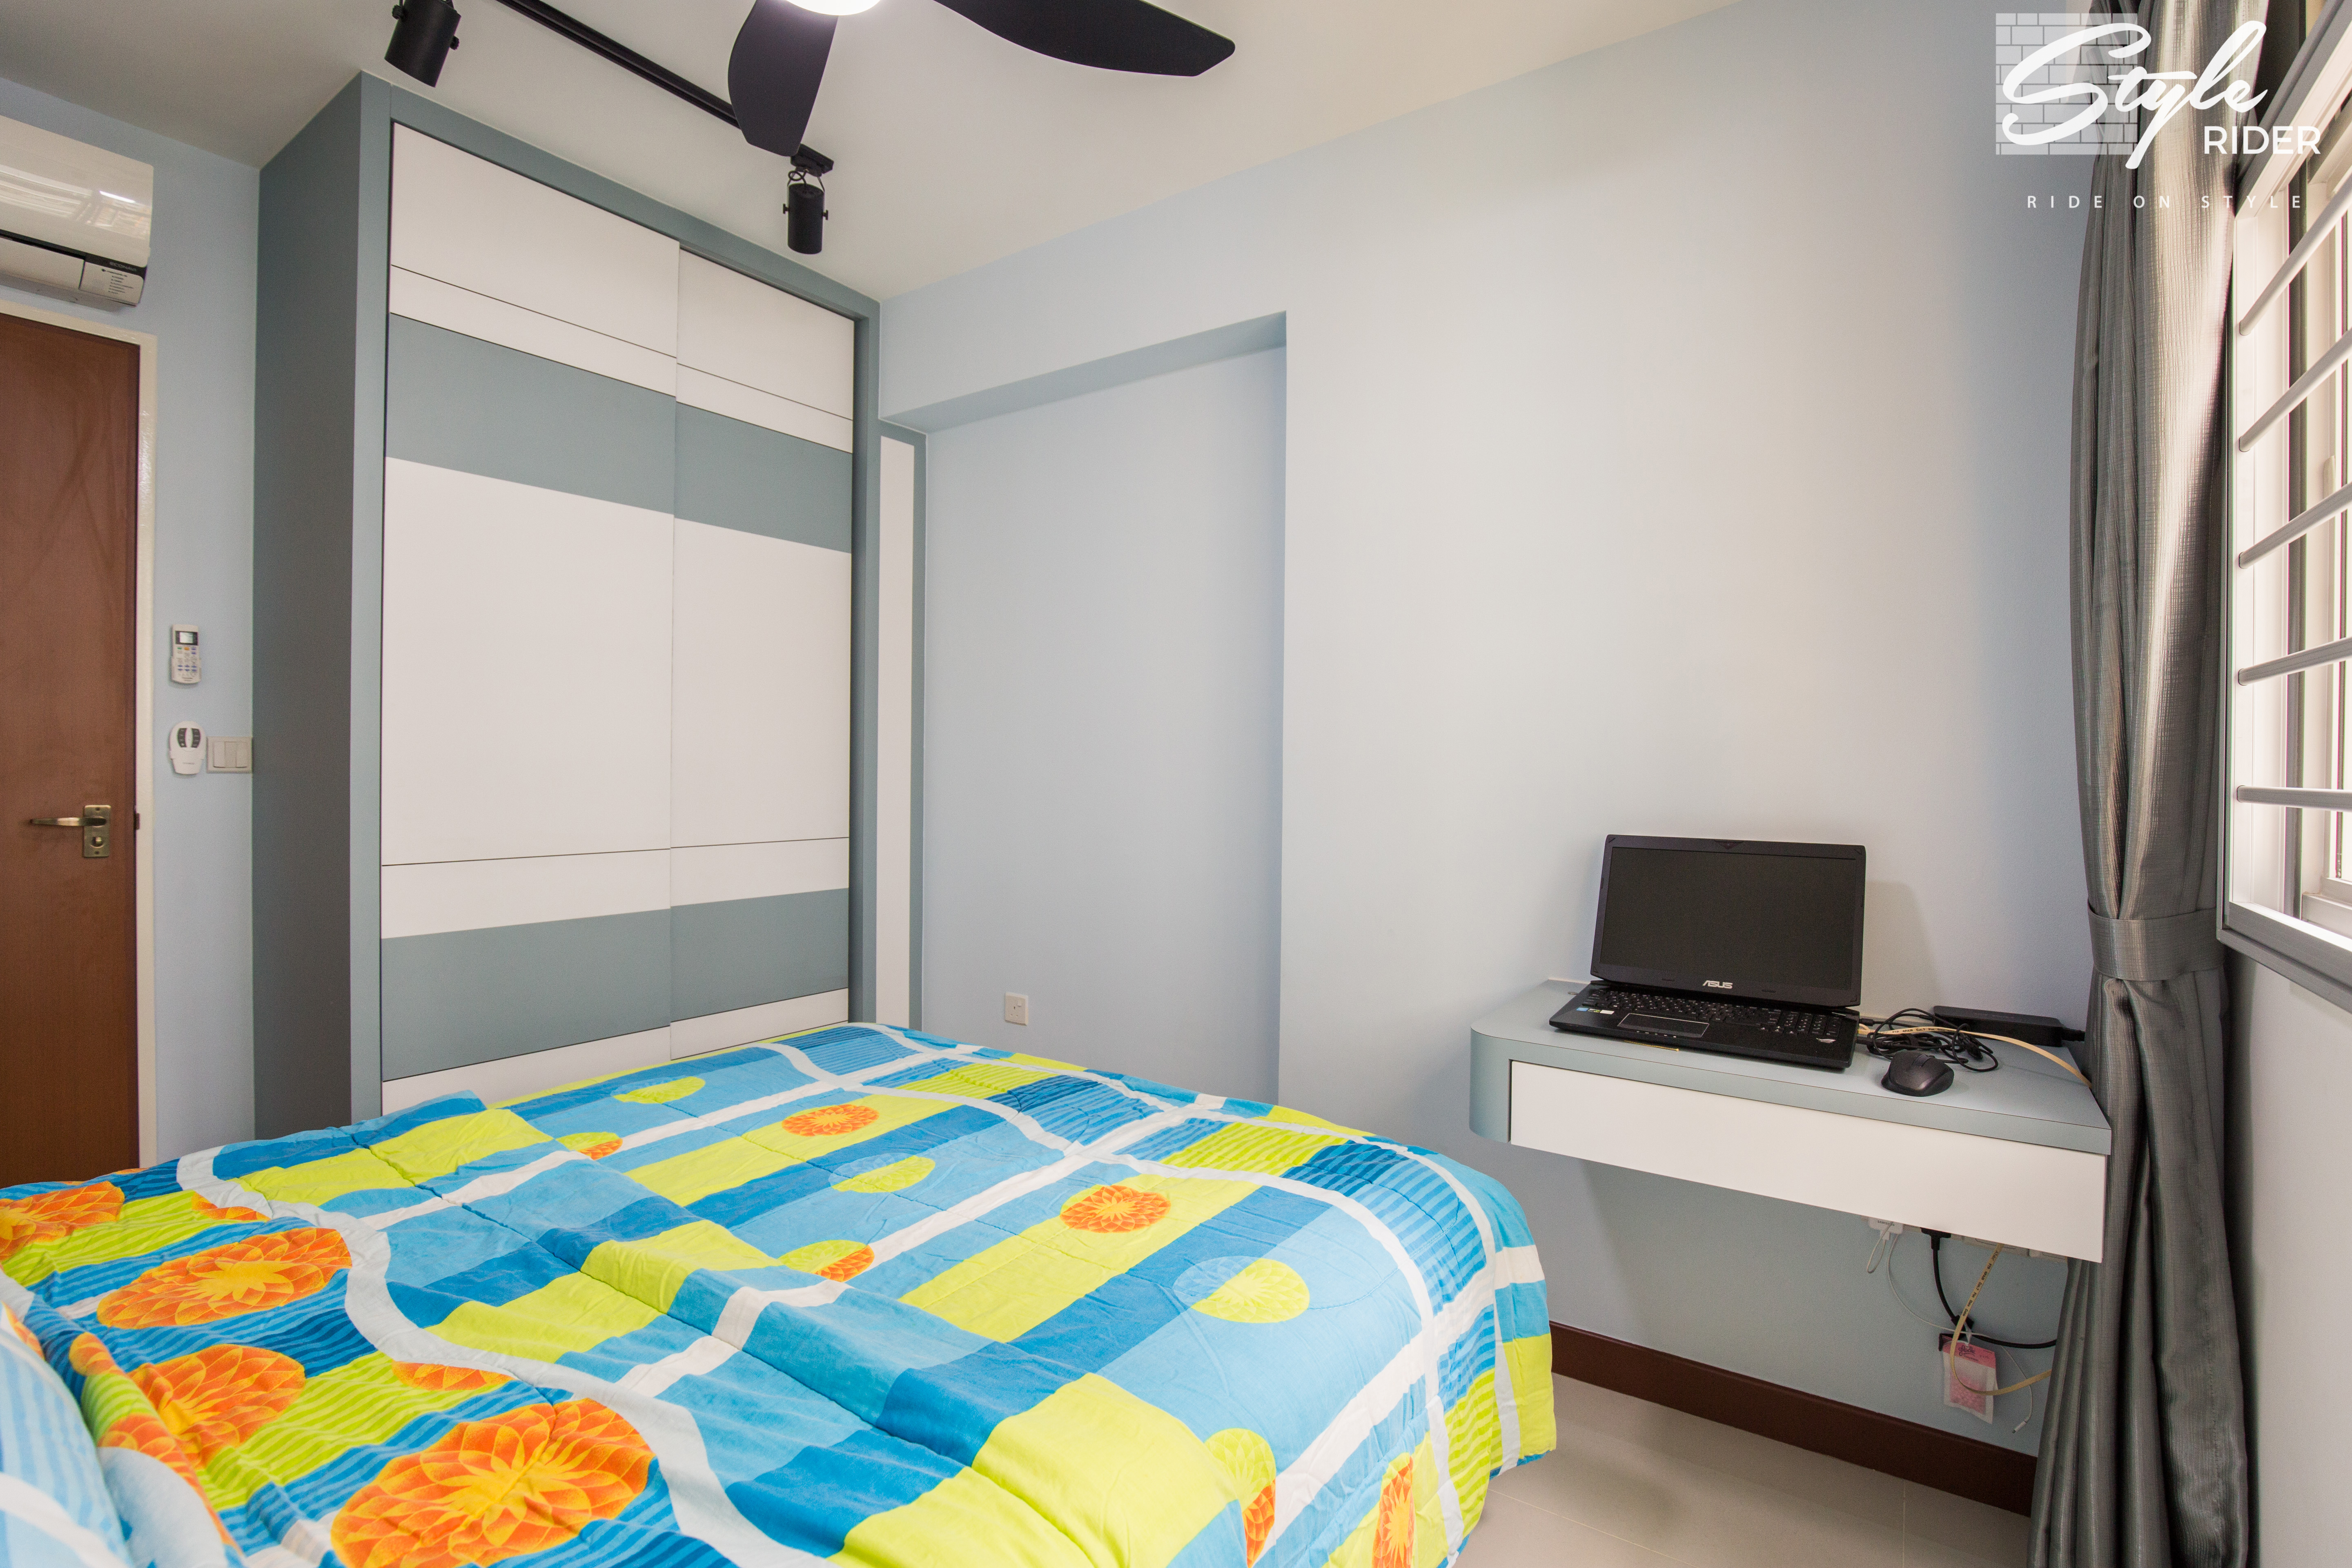 Eclectic, Modern, Scandinavian Design - Bedroom - HDB 4 Room - Design by Stylerider Pte Ltd